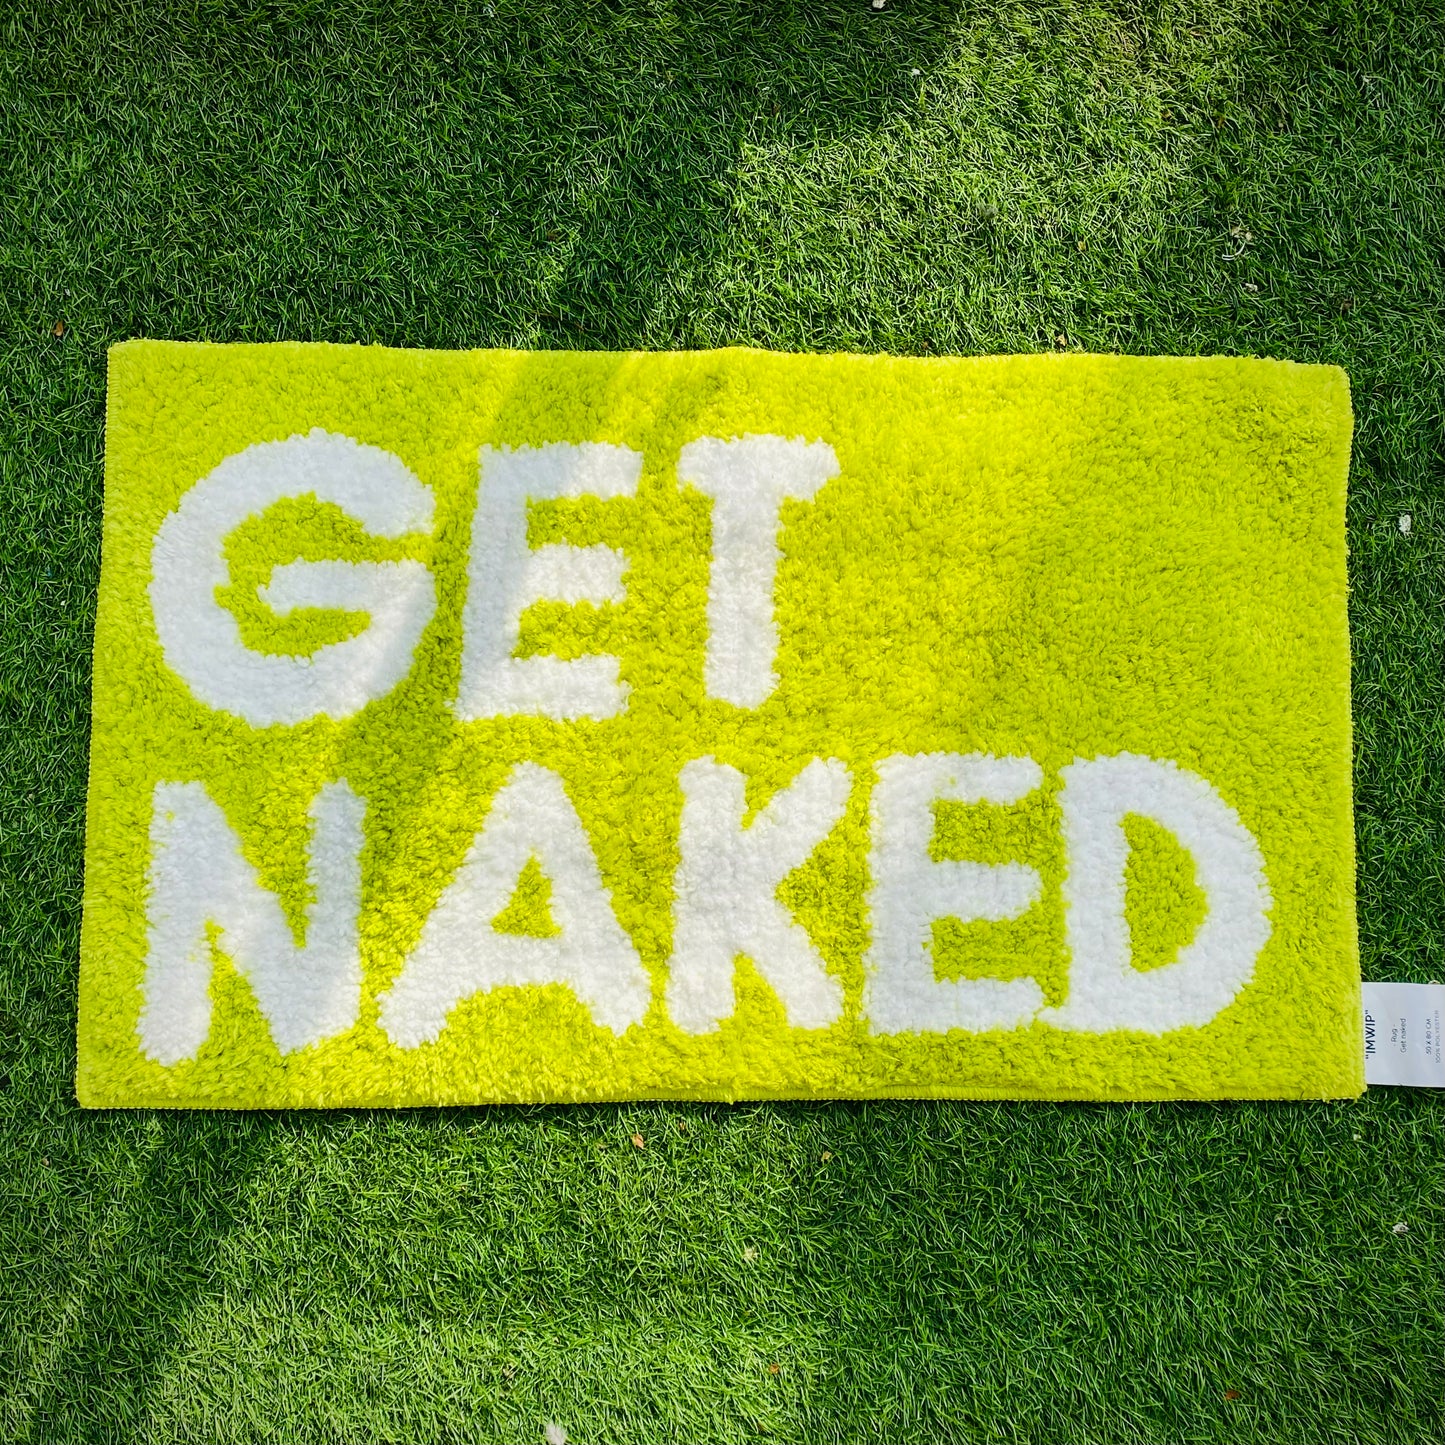 Get Naked Rug